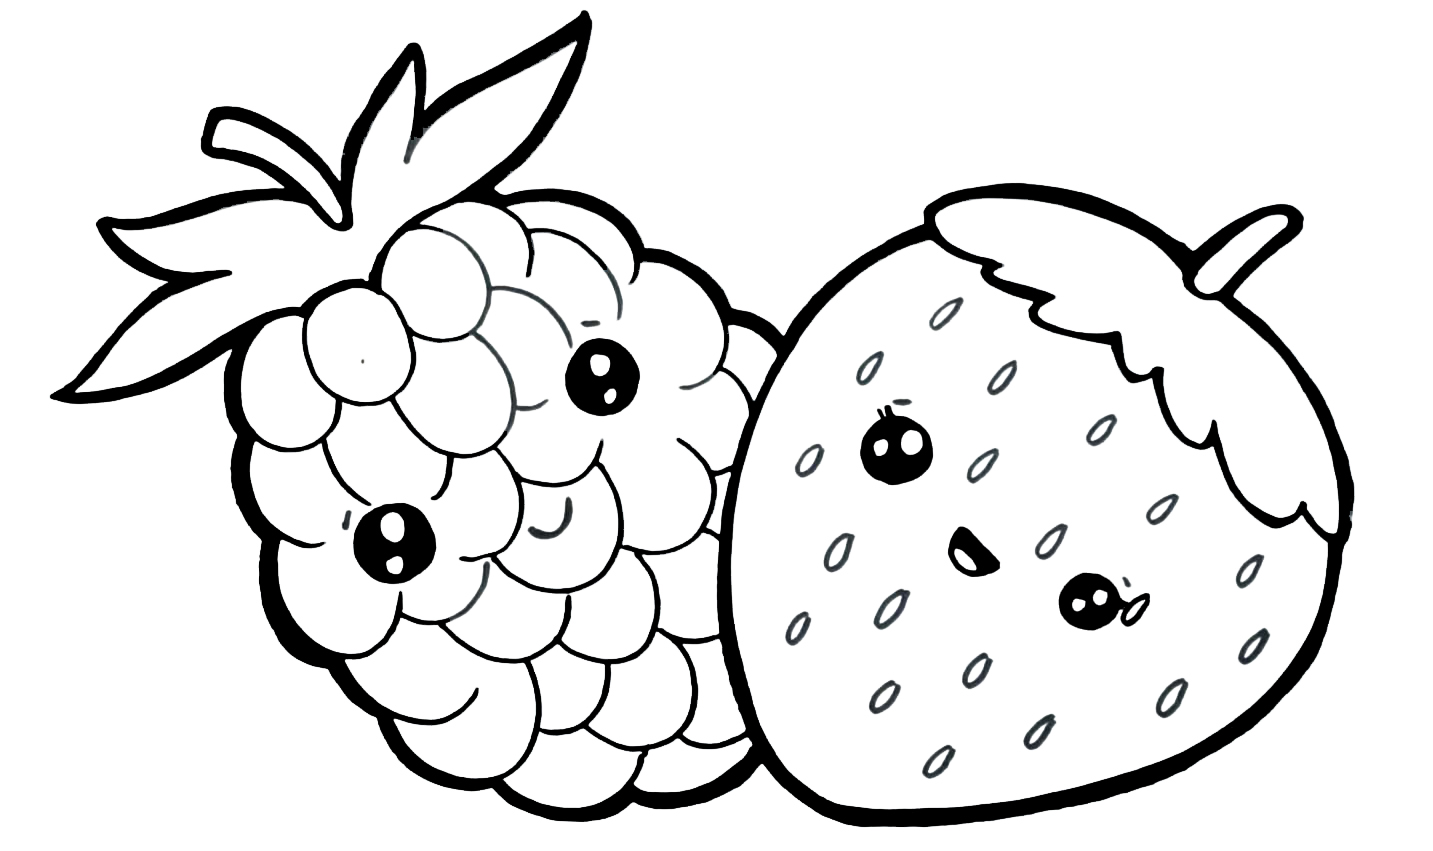 Para Colorear Para los niños Fresas y uvas